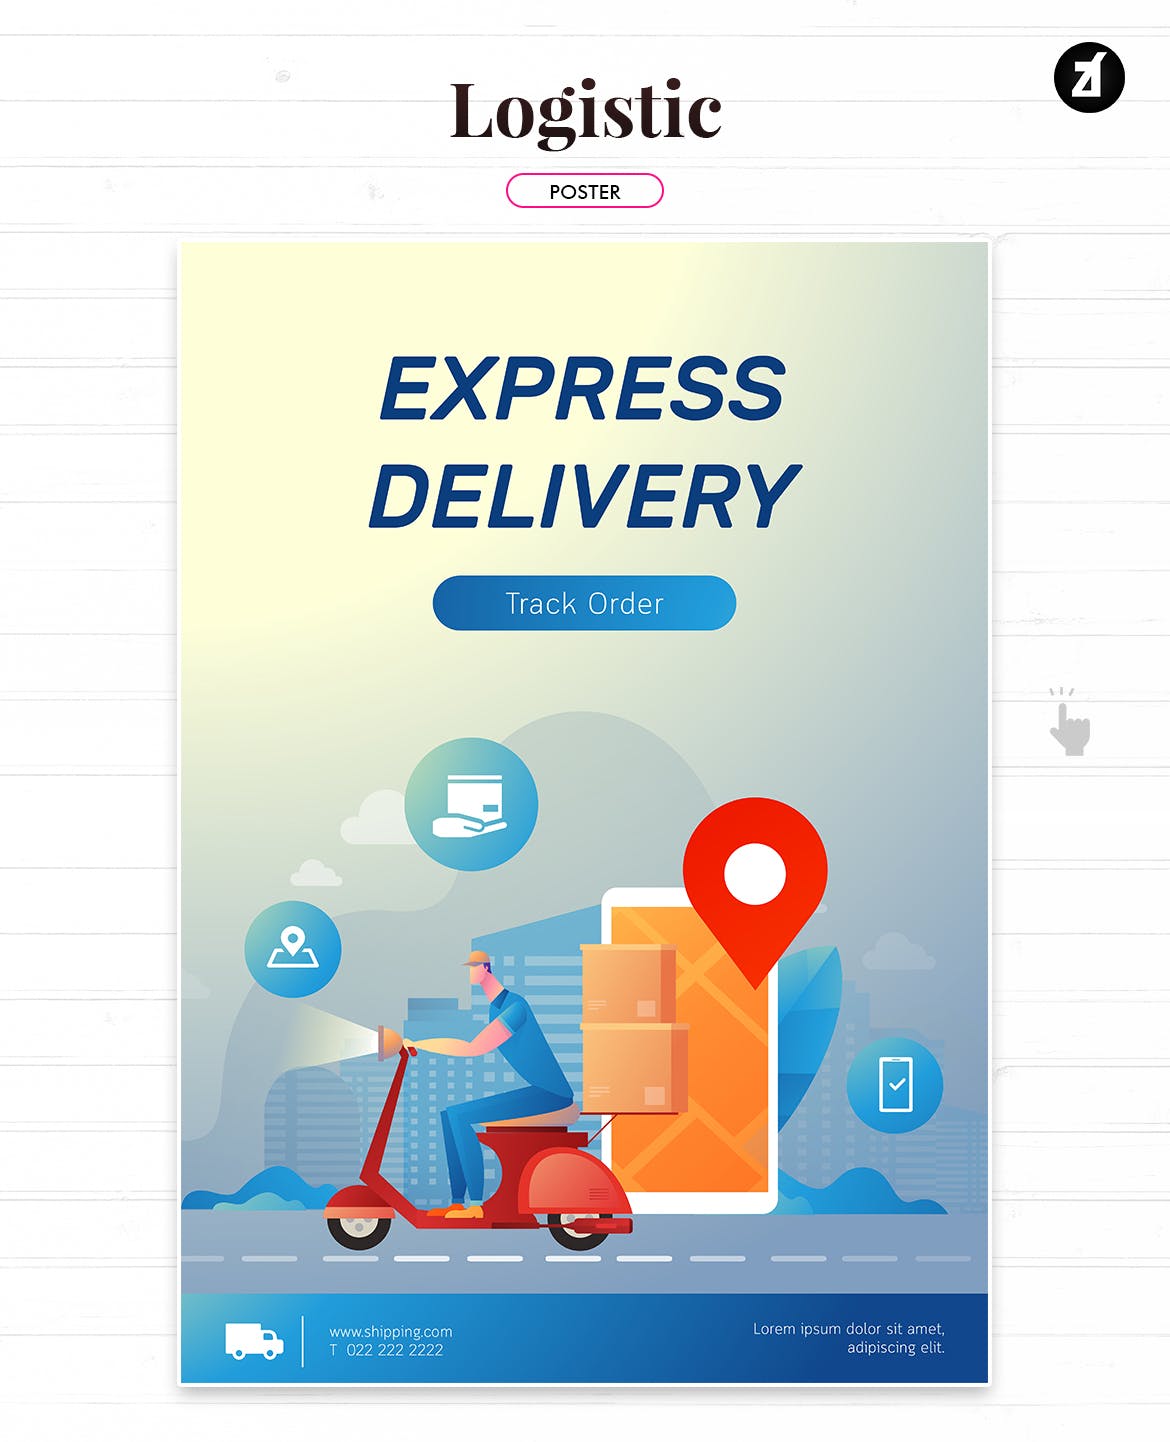 物流配送主题矢量插画设计素材 Logistic and delivery illustration with layout插图2